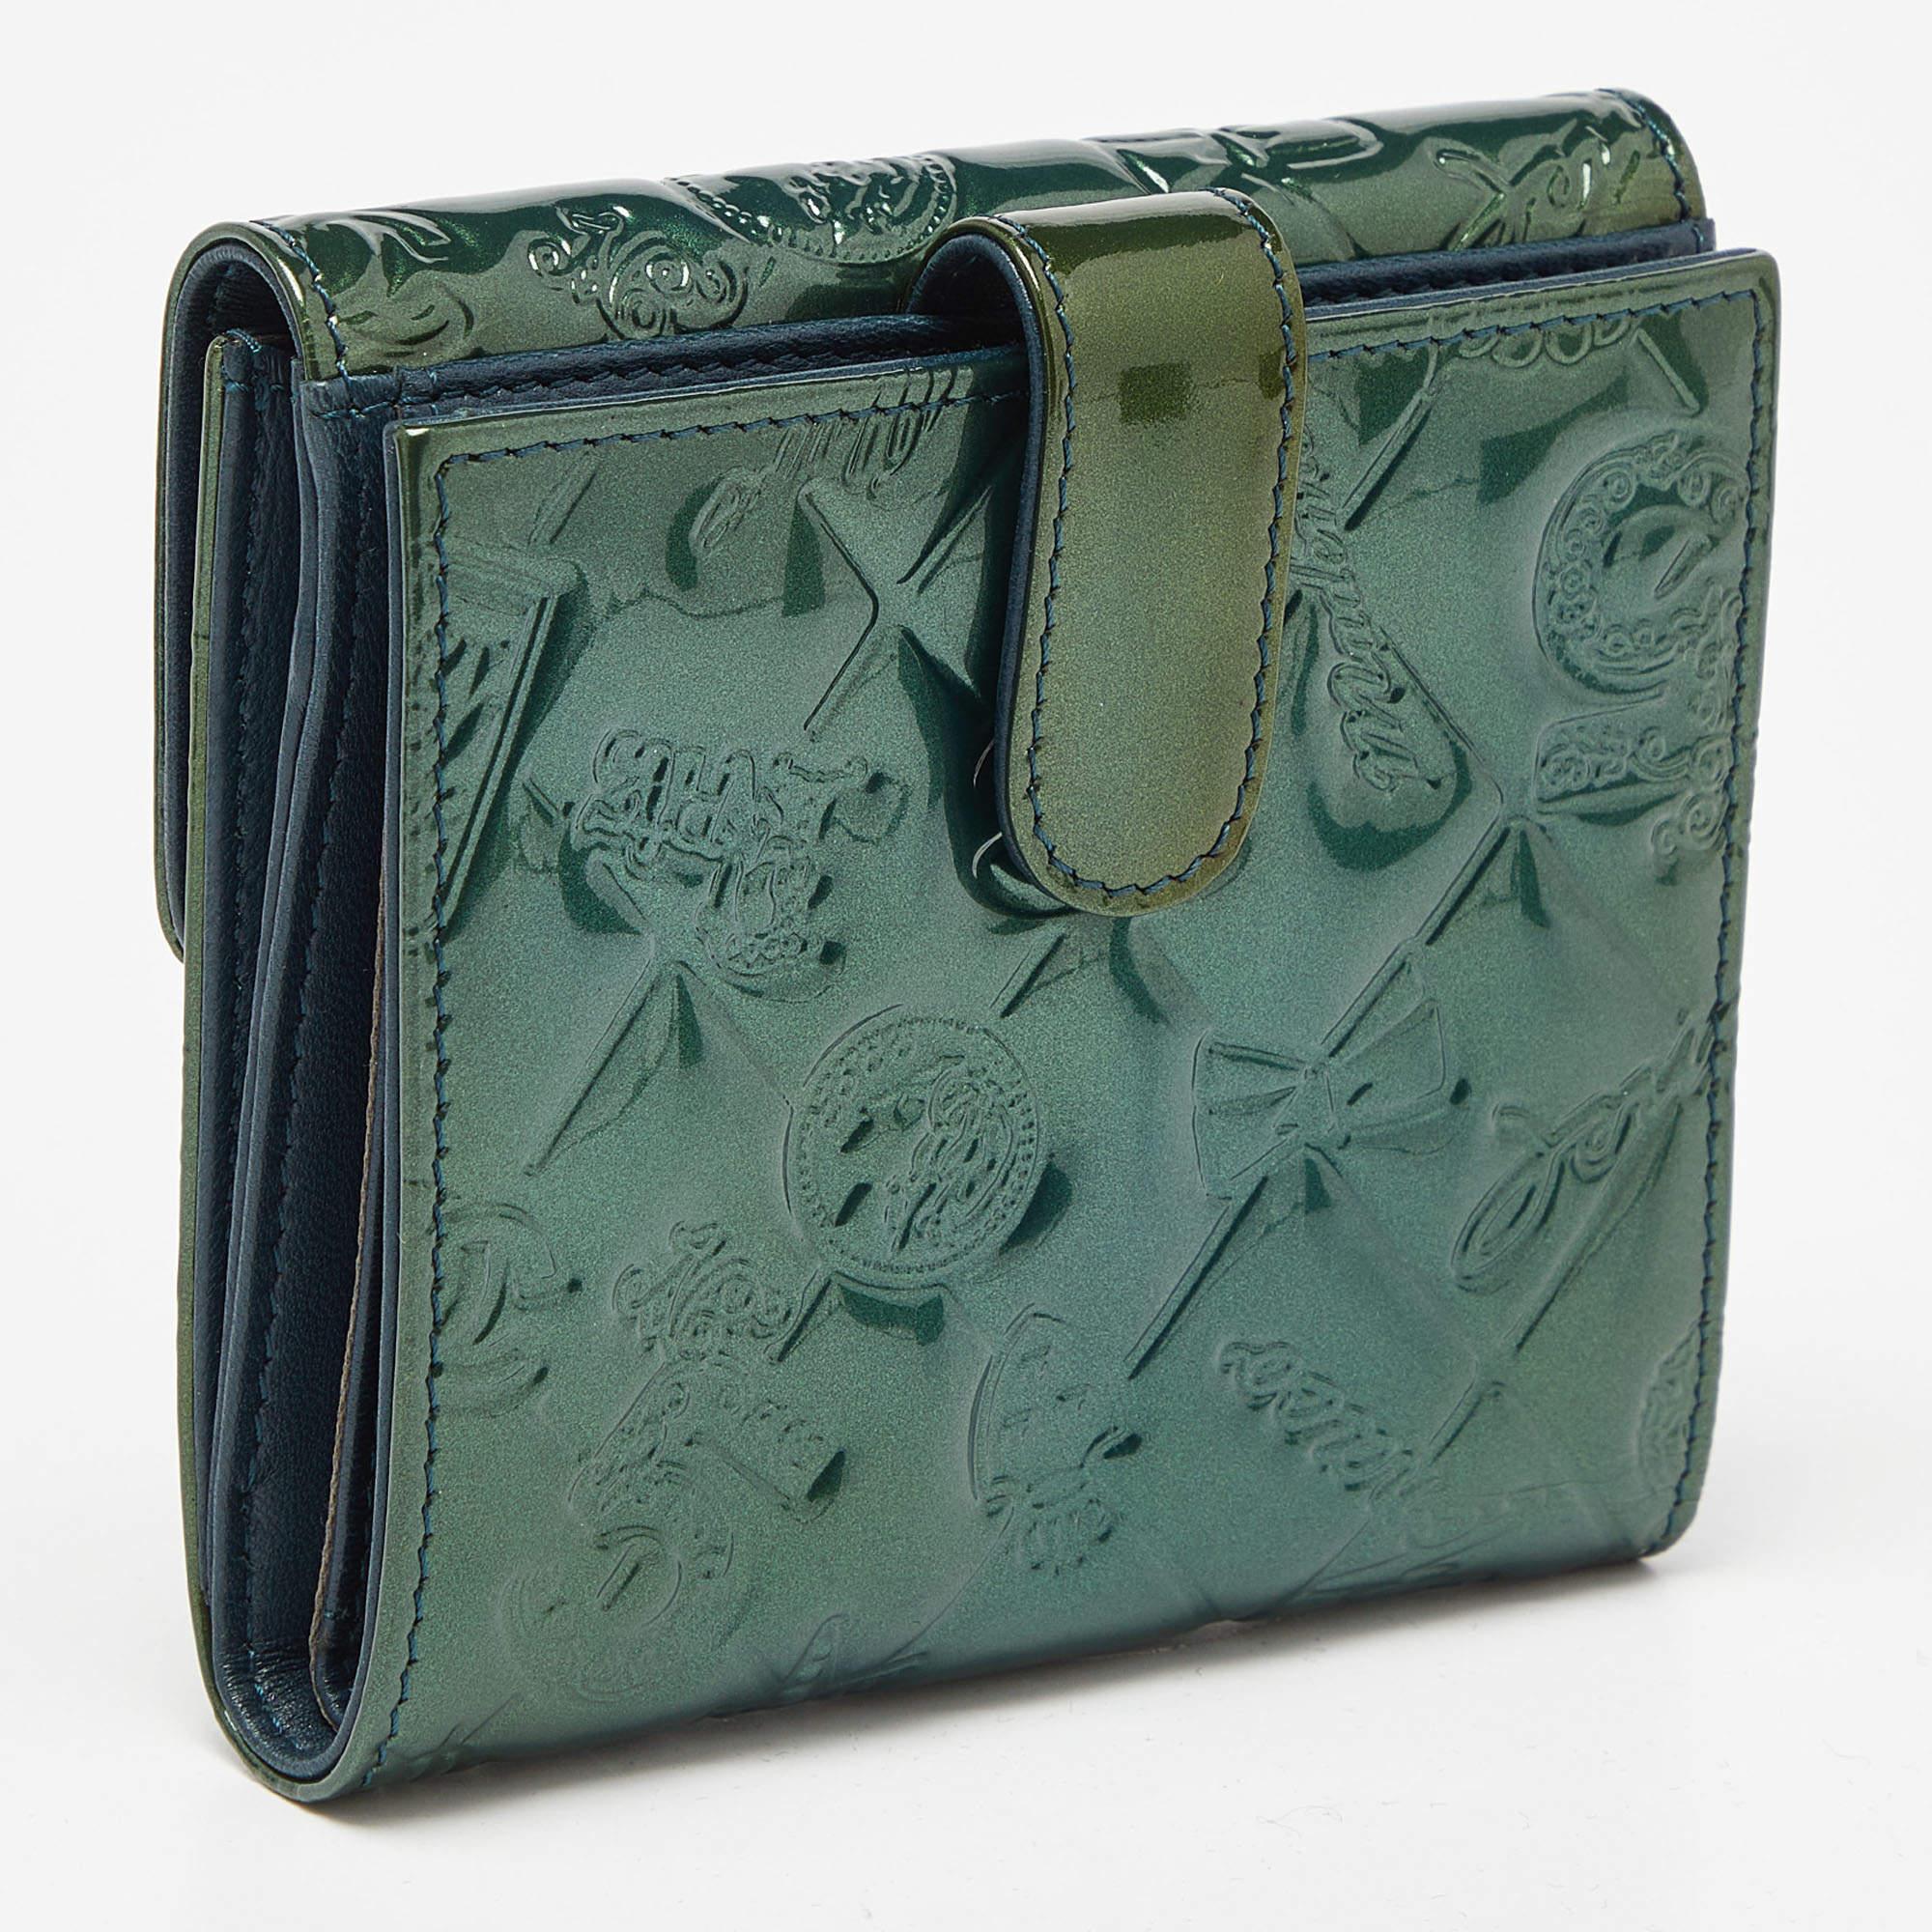 Diese wunderschöne Chanel Teal Patent Compact Wallet ist aus Lackleder gefertigt und mit Chanel-Logos geprägt. Die hintere Druckknopftasche gibt den Blick auf ein unterteiltes Innenfach frei. Das Portemonnaie verfügt außerdem über eine